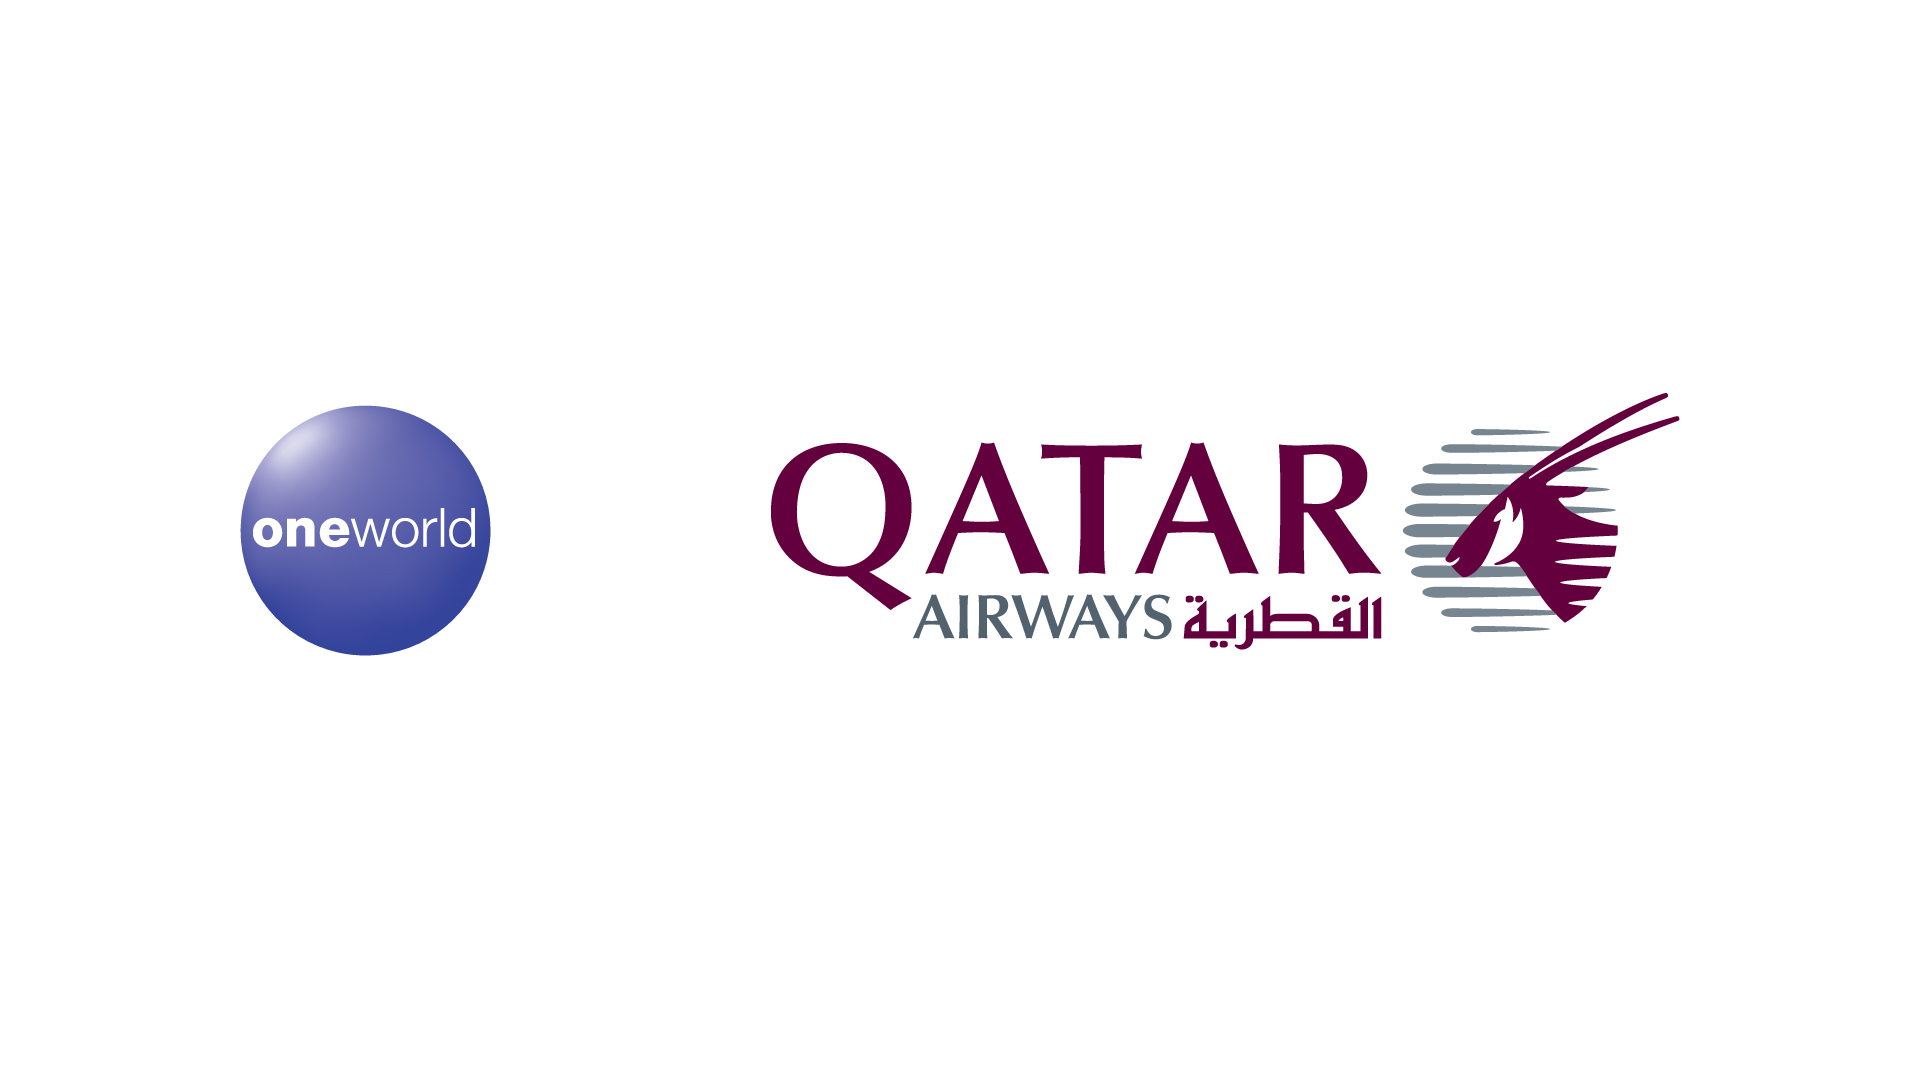 Катар дав. Катарские авиалинии логотип. Логотип авиакомпании Катар. Qatar Airways логотип. Катар Аирлинес логотип.